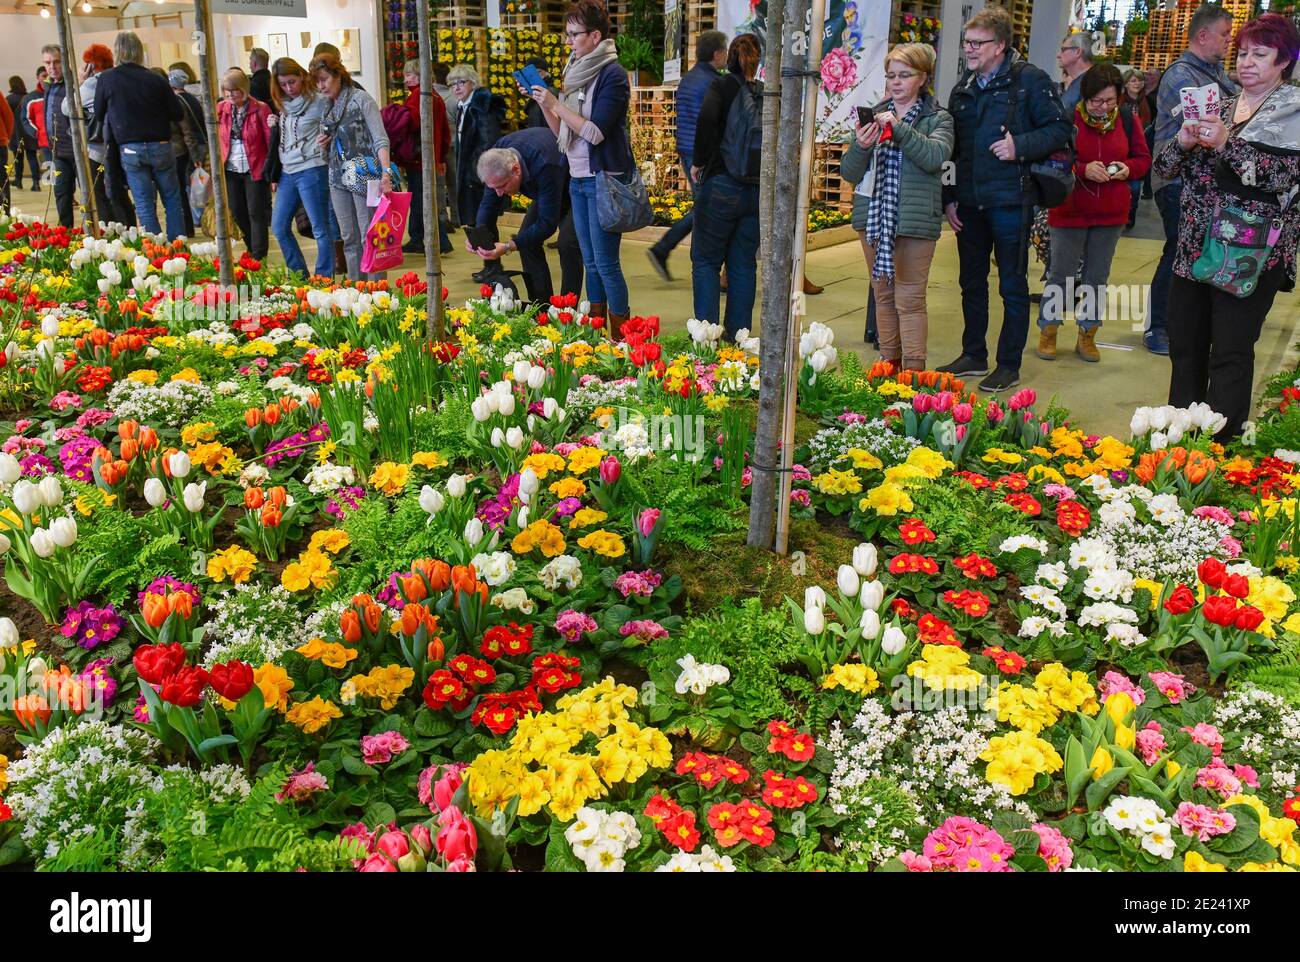 Blumenhalle, Grüne Woche, Messe, Berlin, Deutschland Stock Photo